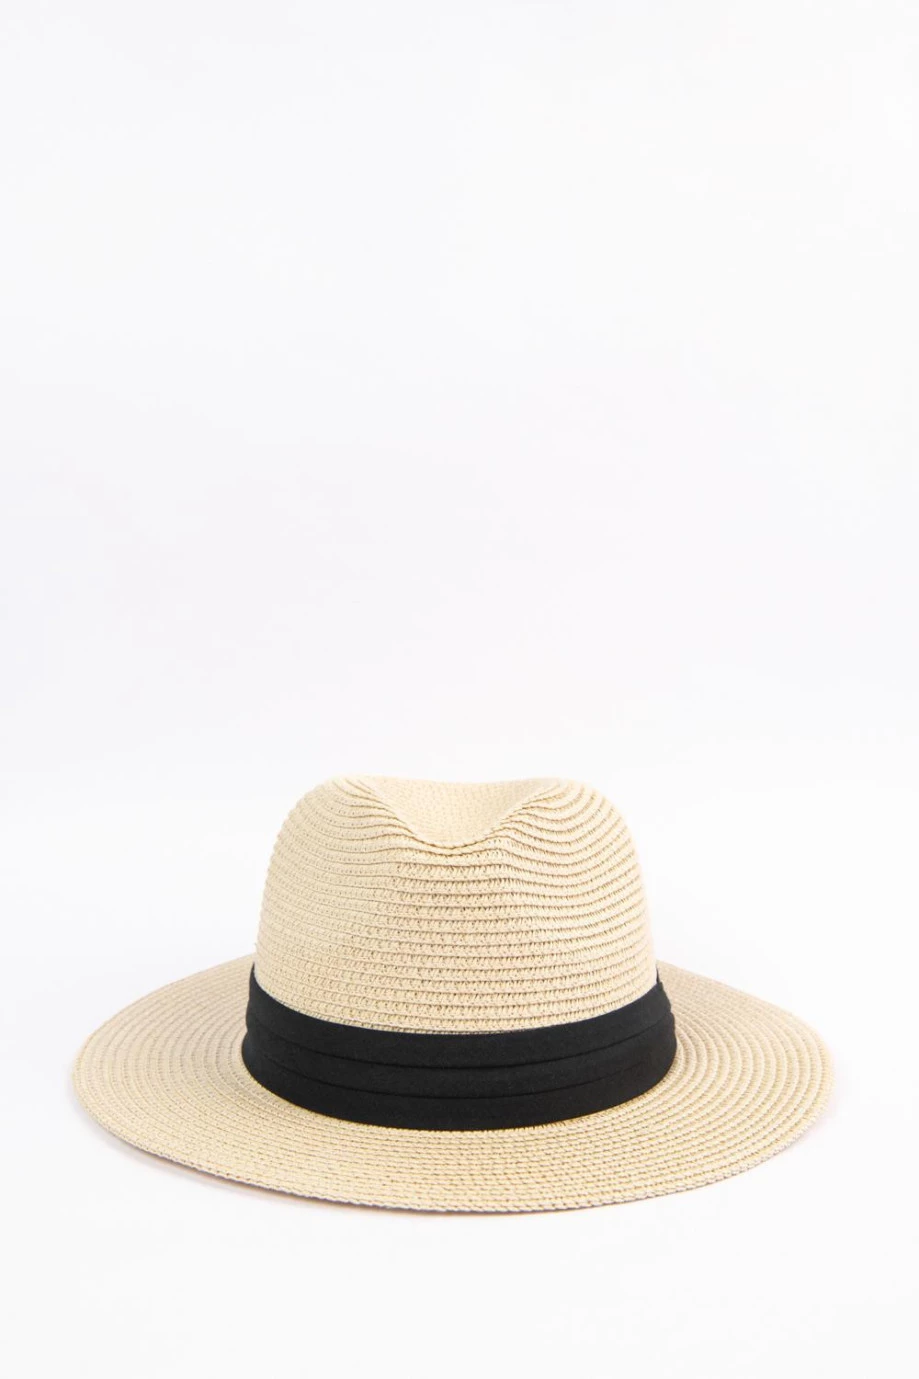 Sombrero fedora crema claro con cinta negra y ala ancha